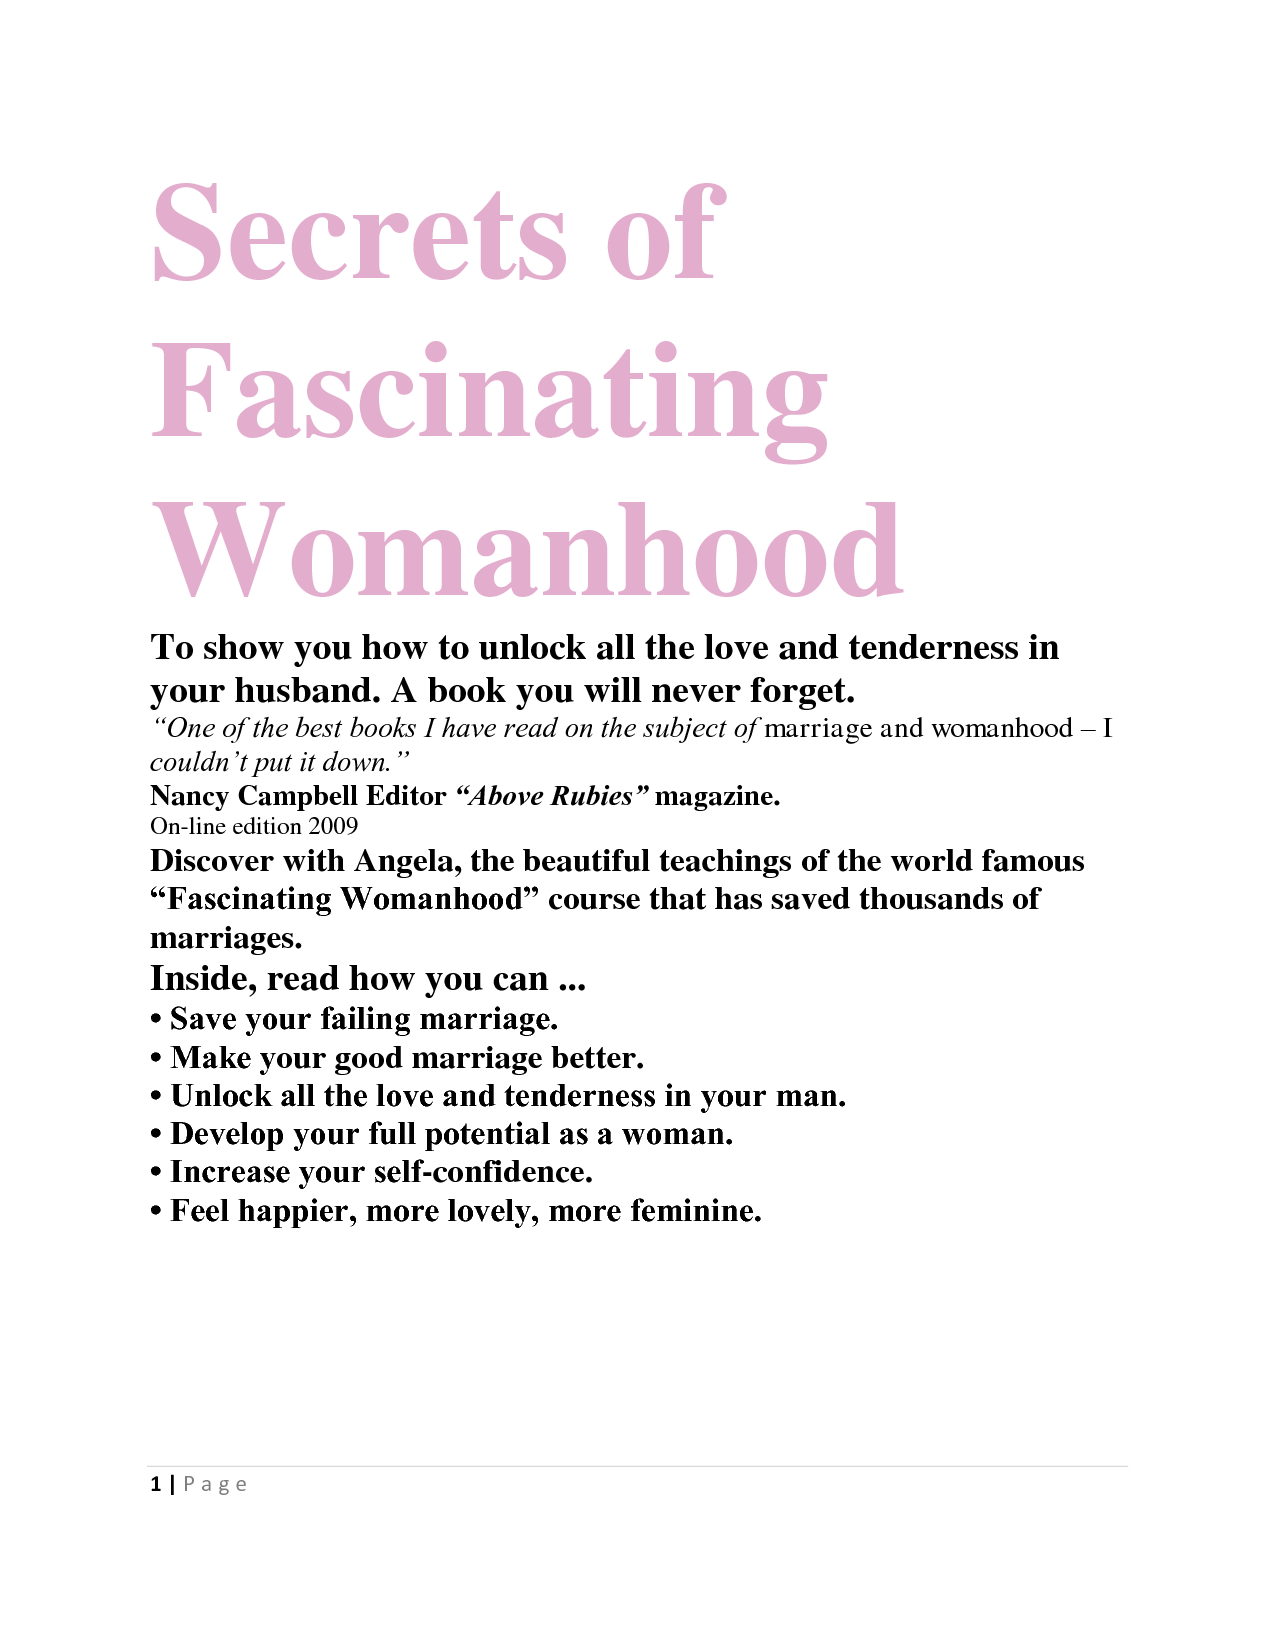 secrets of fascinating womanhood classes